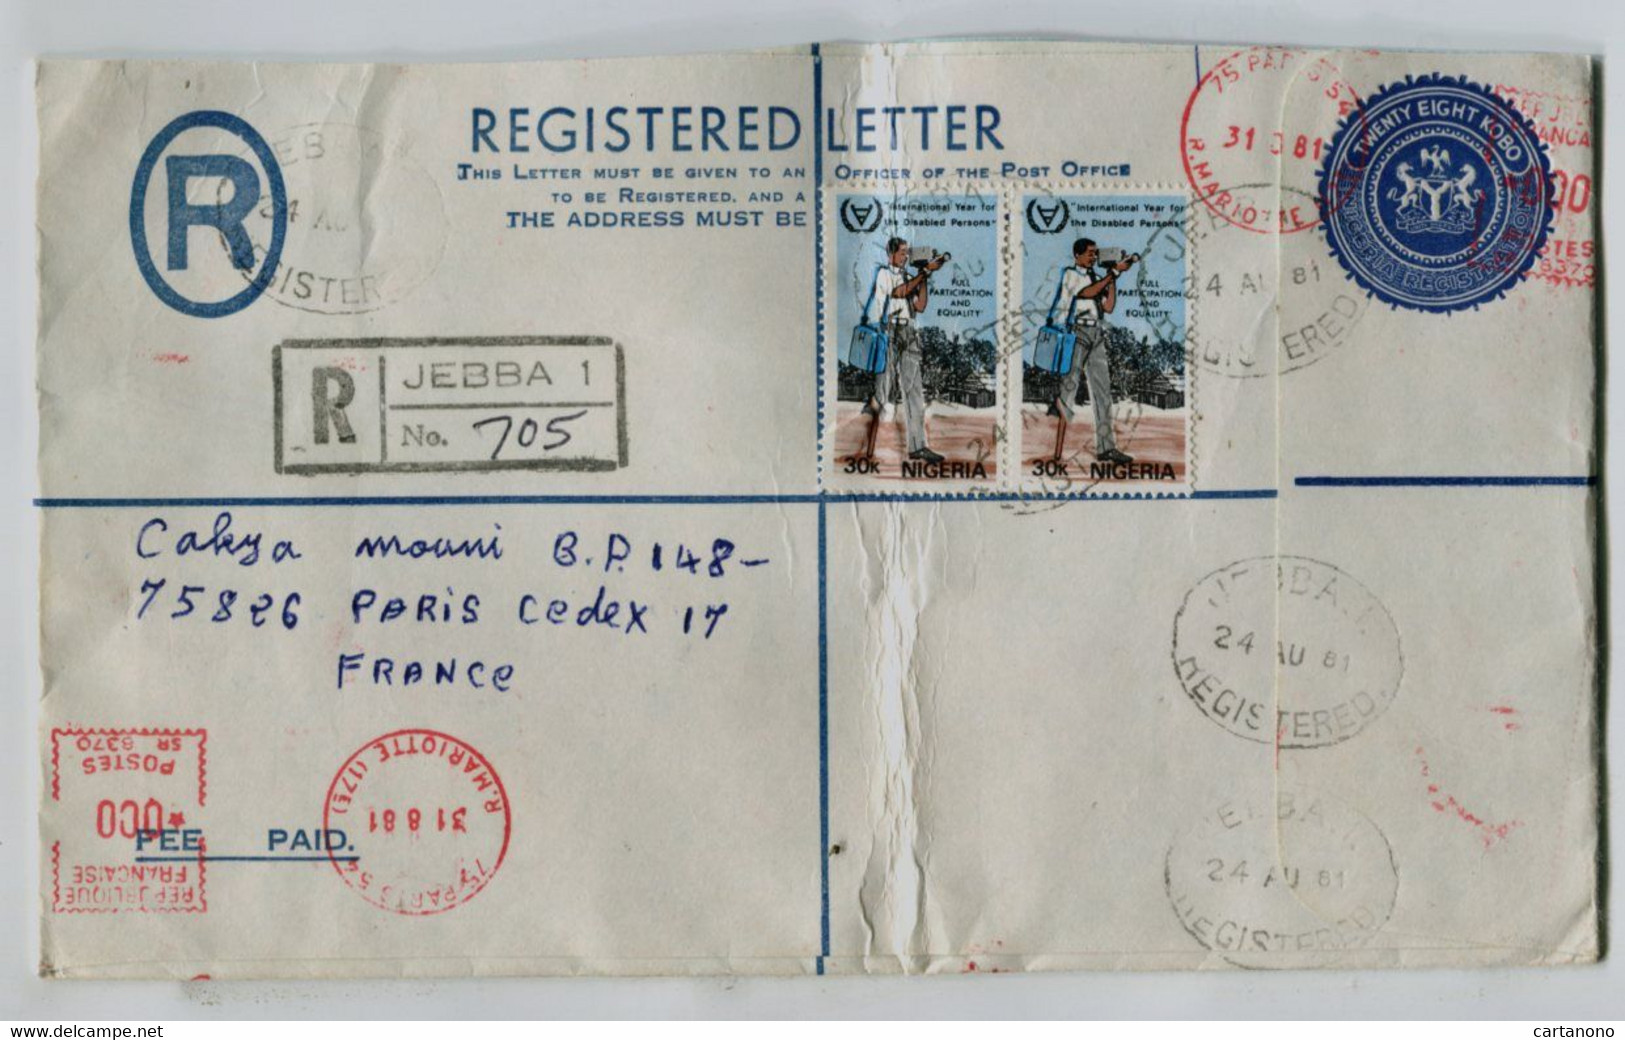 NIGERIA 1981 - Entier Postal 28 Kobo + Complément Pour Recommandation + Cachet D'arrivée Par Machine à Affranchir - Nigeria (1961-...)